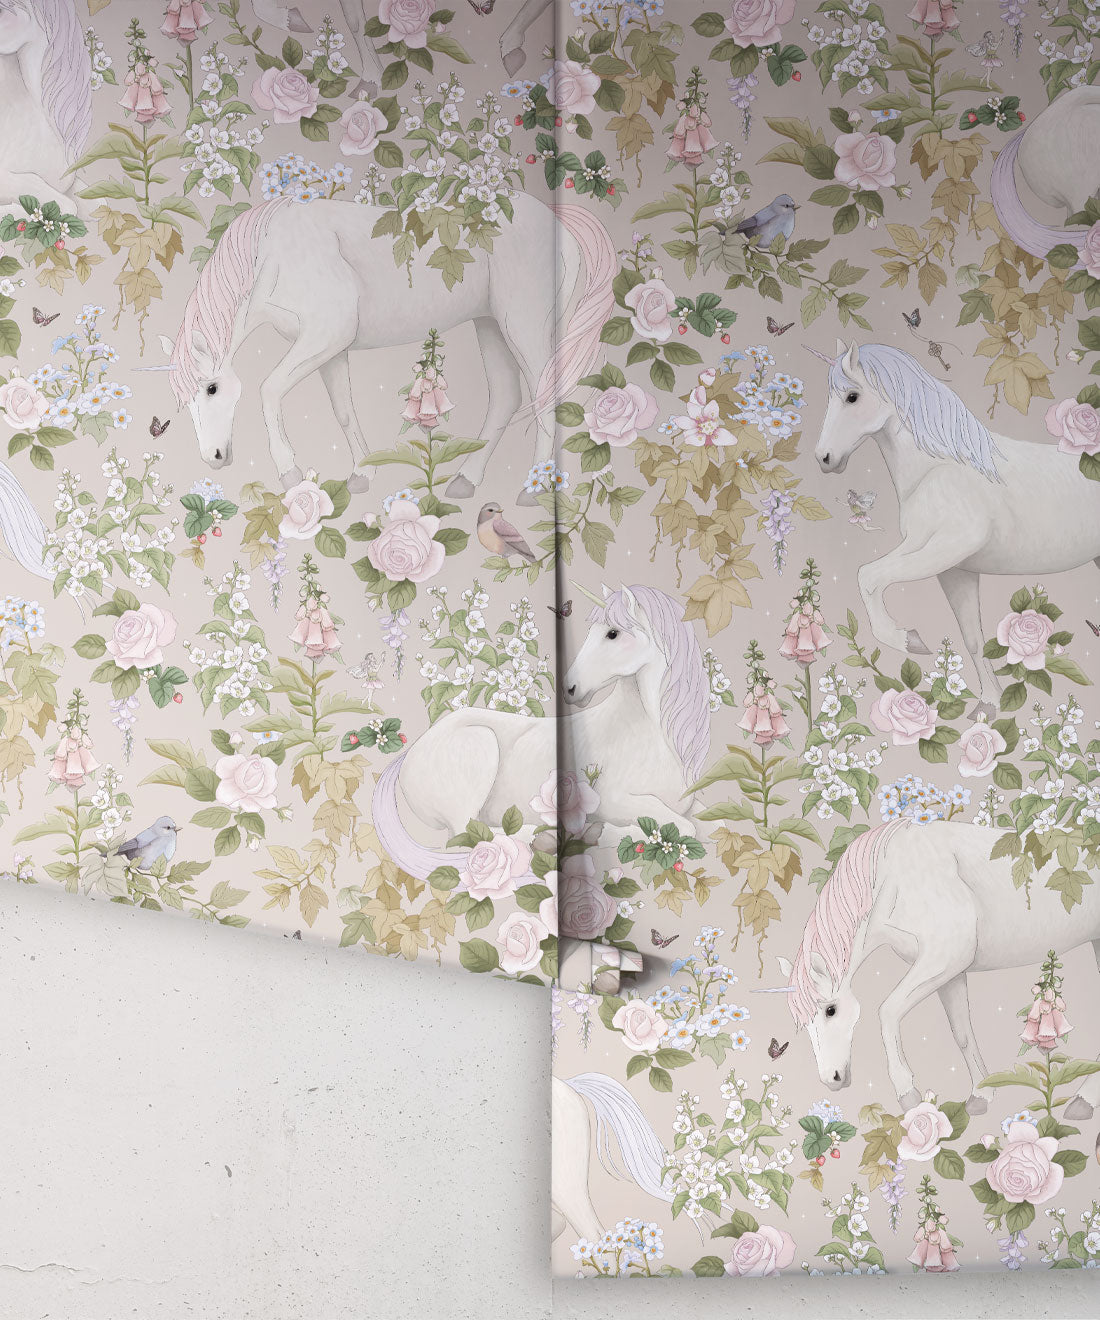 Nursery Wallpaper - Field of Dreams by Fleur Harris - Skipping Stone